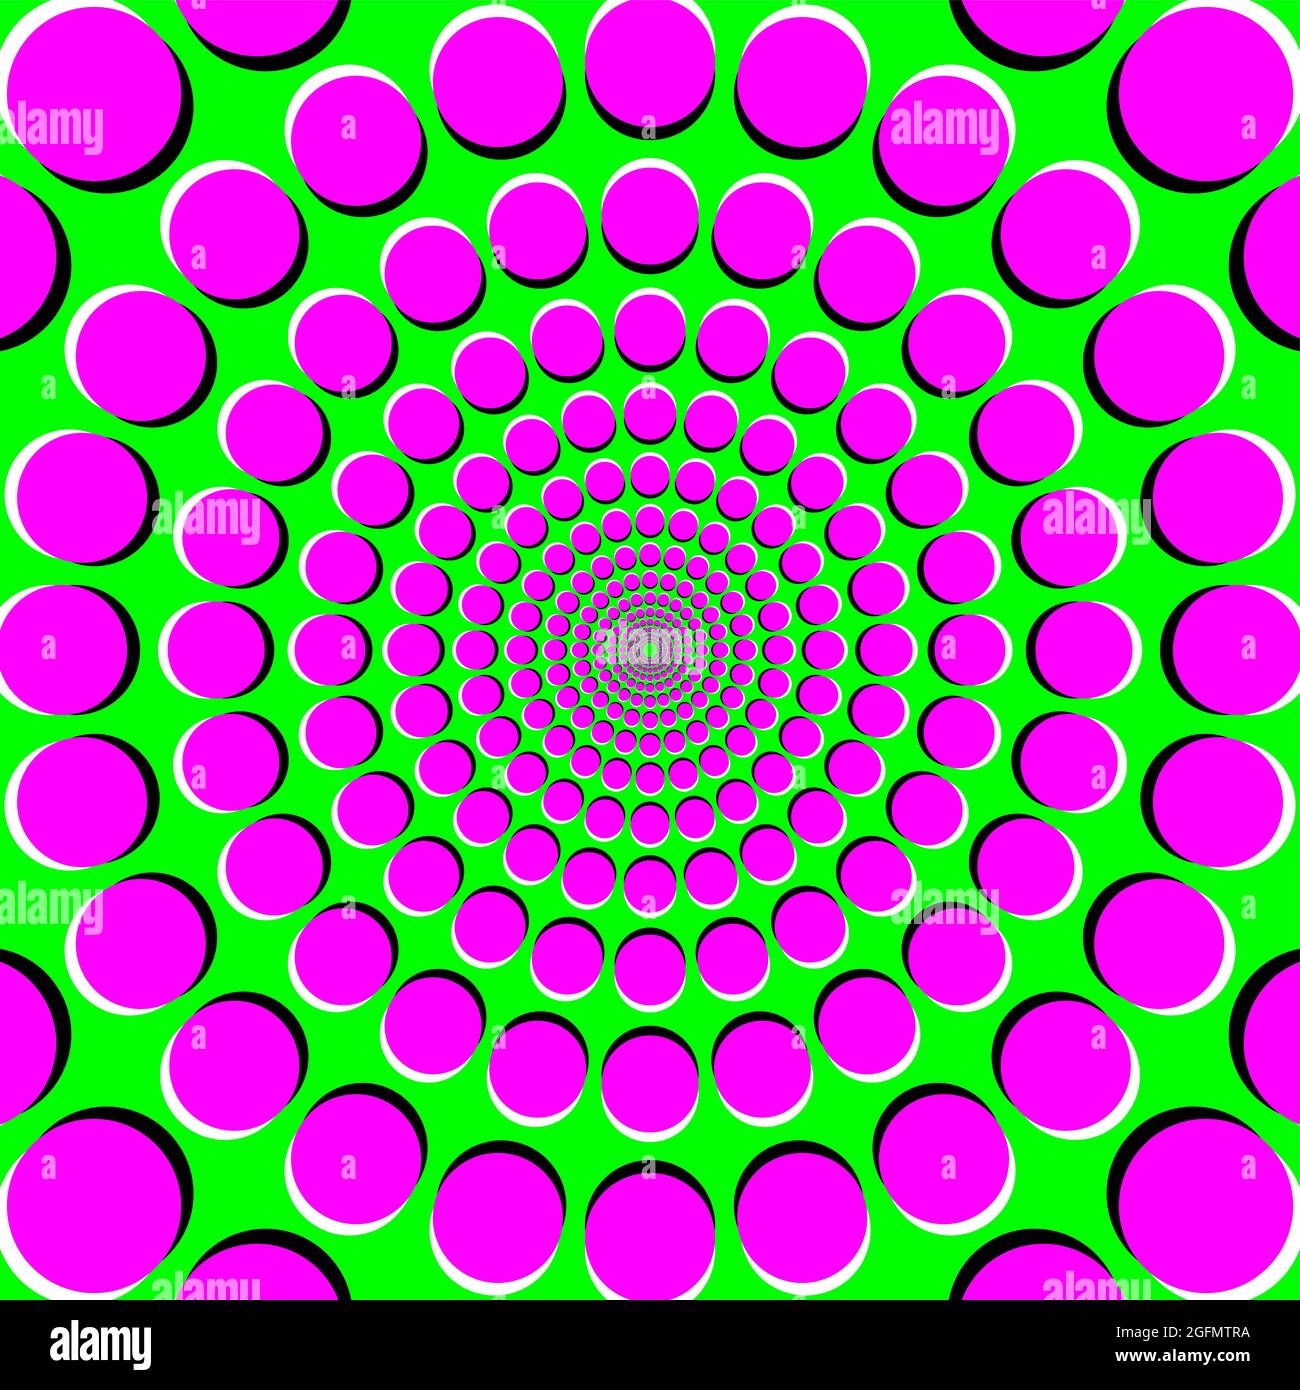 Illusion de dérive périphérique, PDI, illusion de mouvement sur fond vert. Il semble que les points magenta colorés deviennent plus grands ou se dédécalage à l'extérieur. Banque D'Images